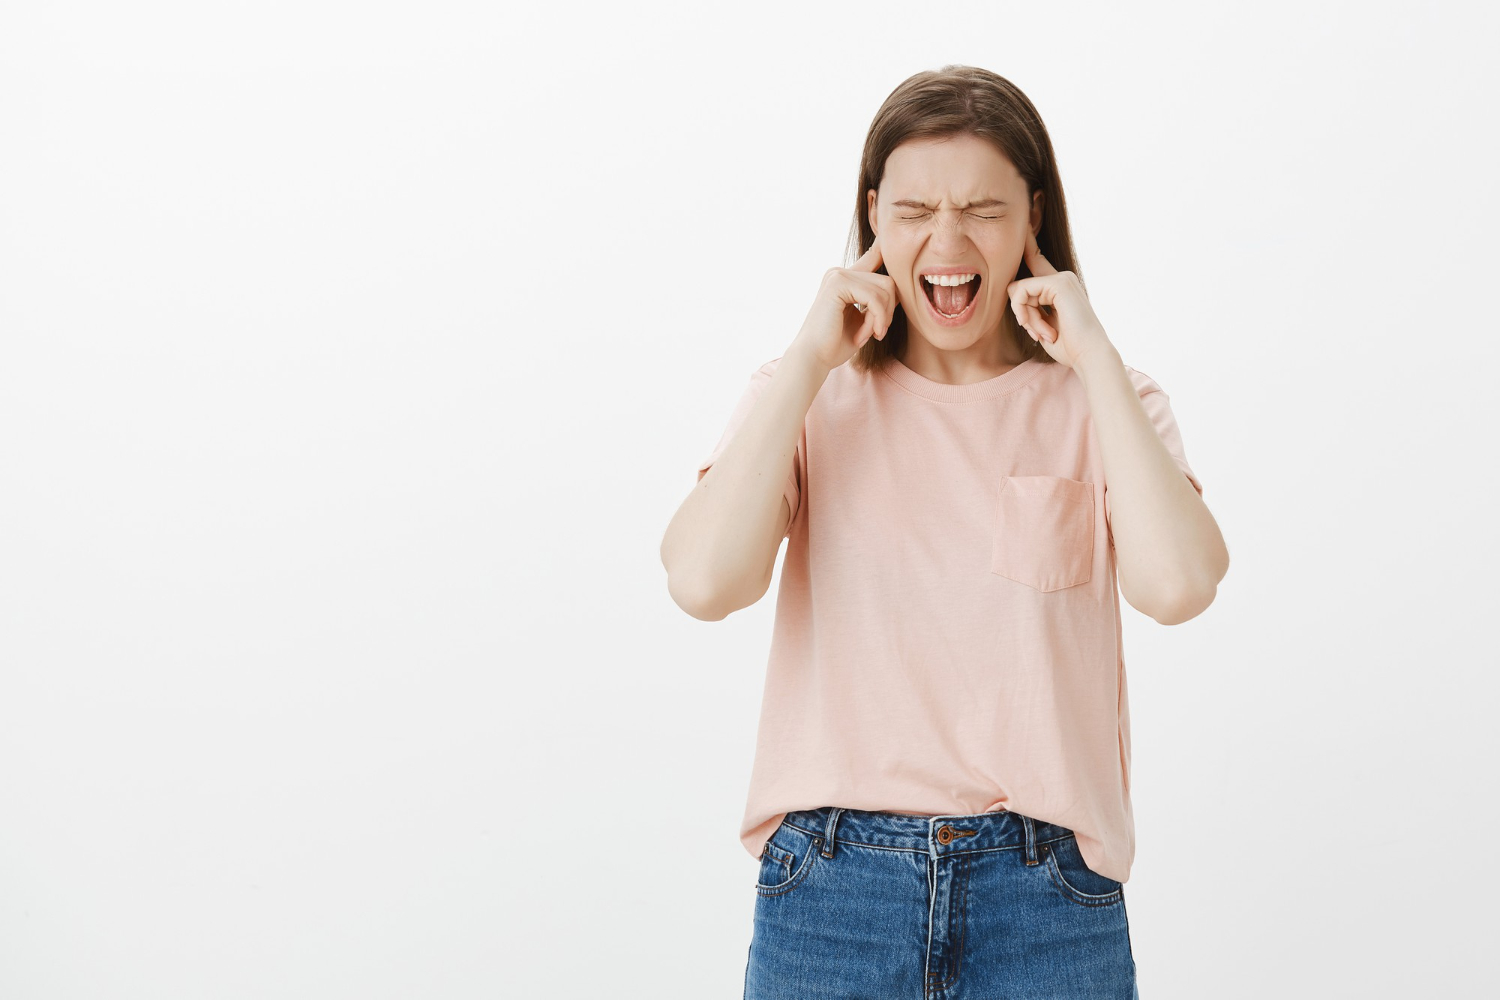 Zumbido no Ouvido: Causas, Sintomas e Tratamentos